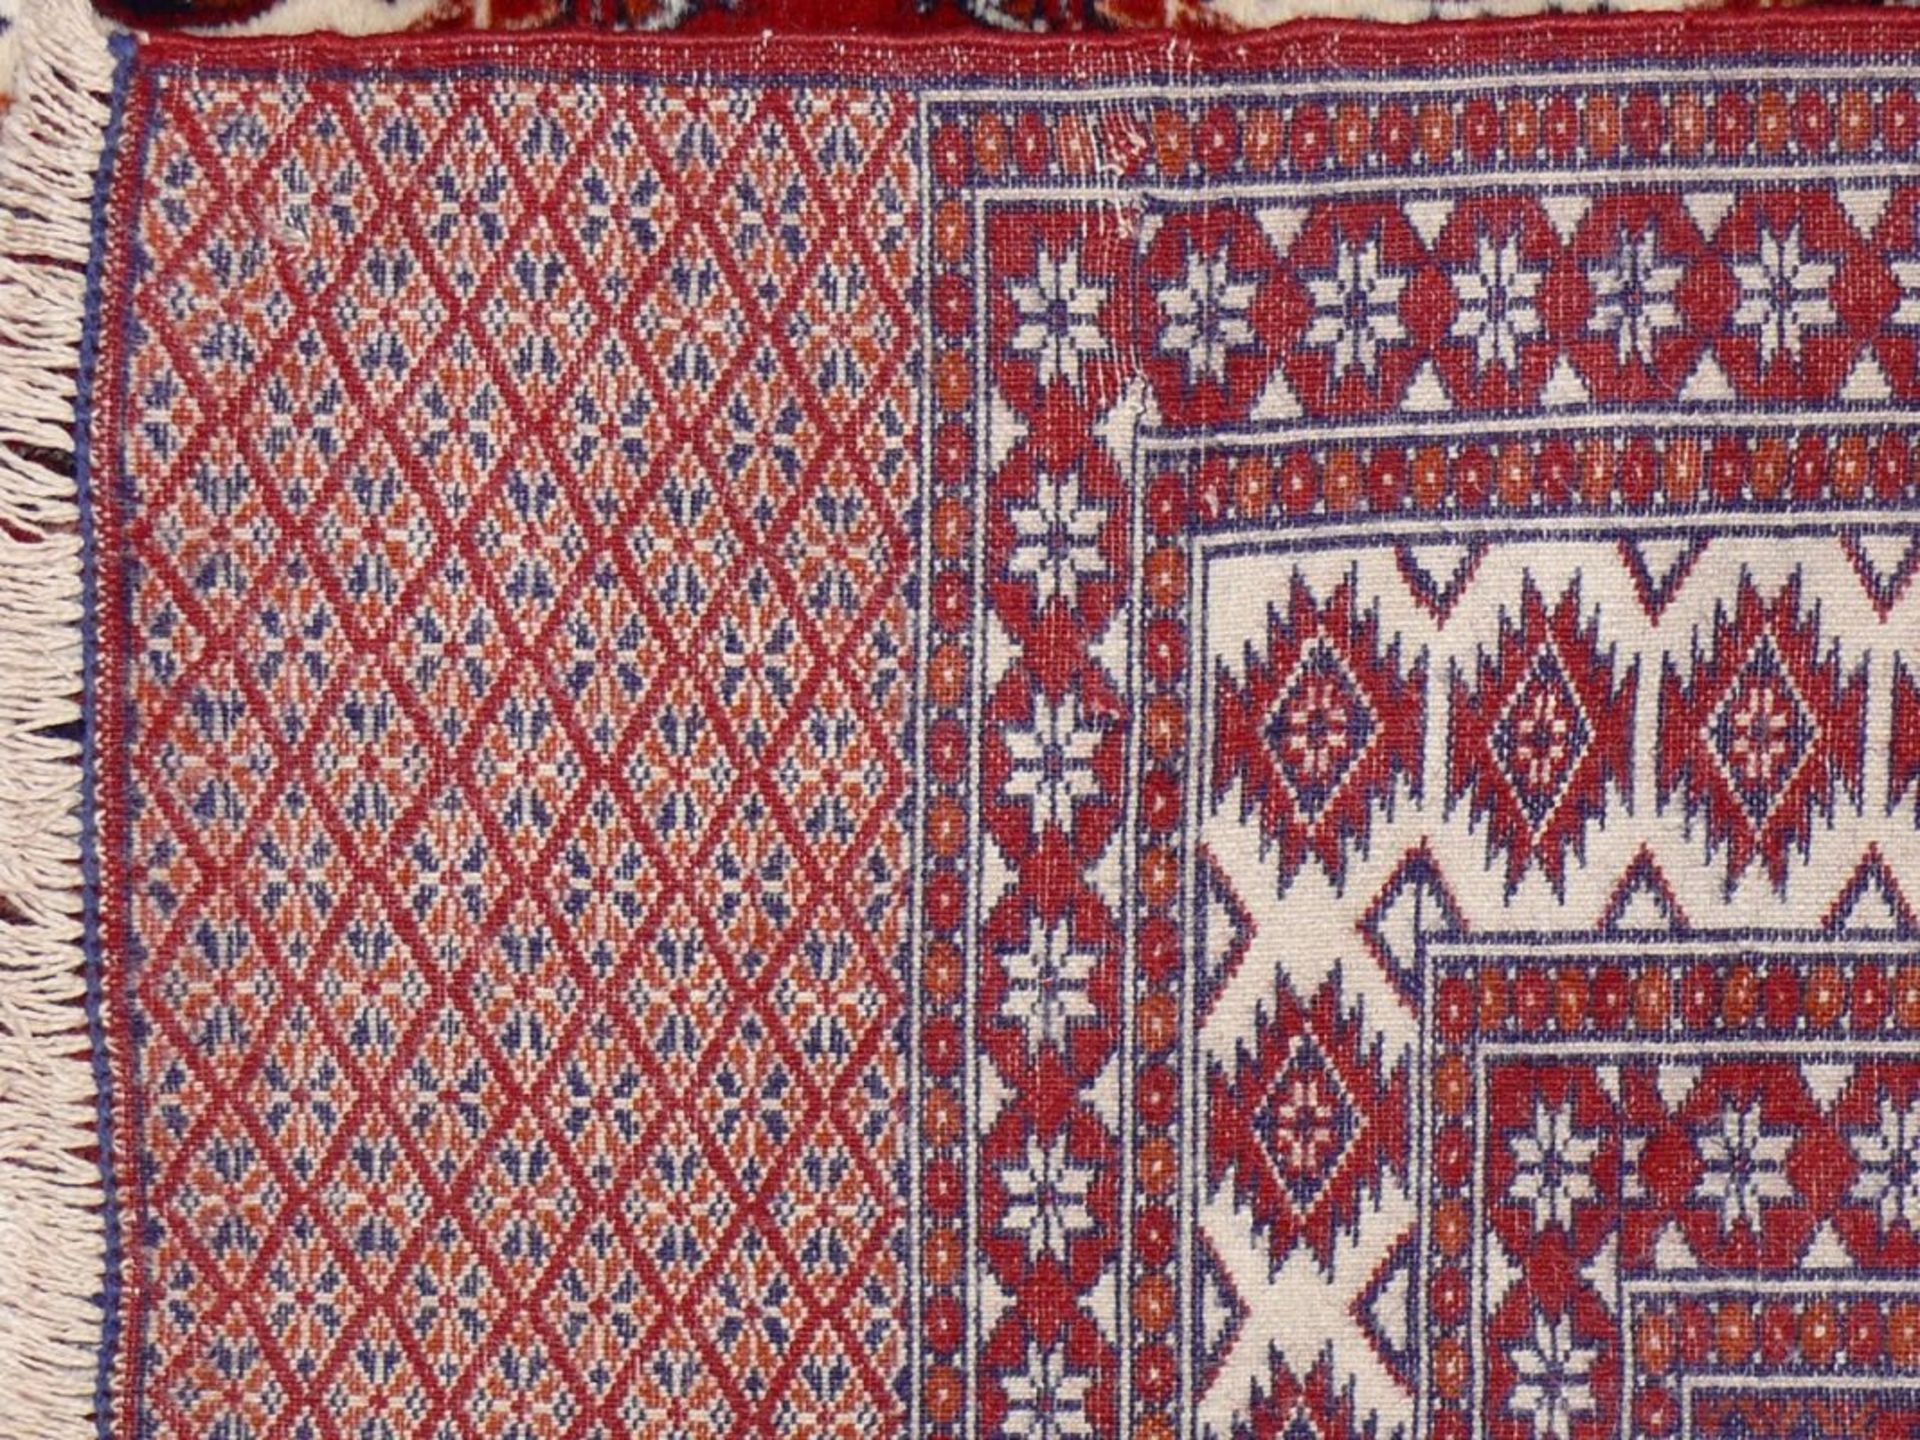 Orientteppich PAKISTANIca. 237 x 155 cm; frisch gereinigt - Image 3 of 3